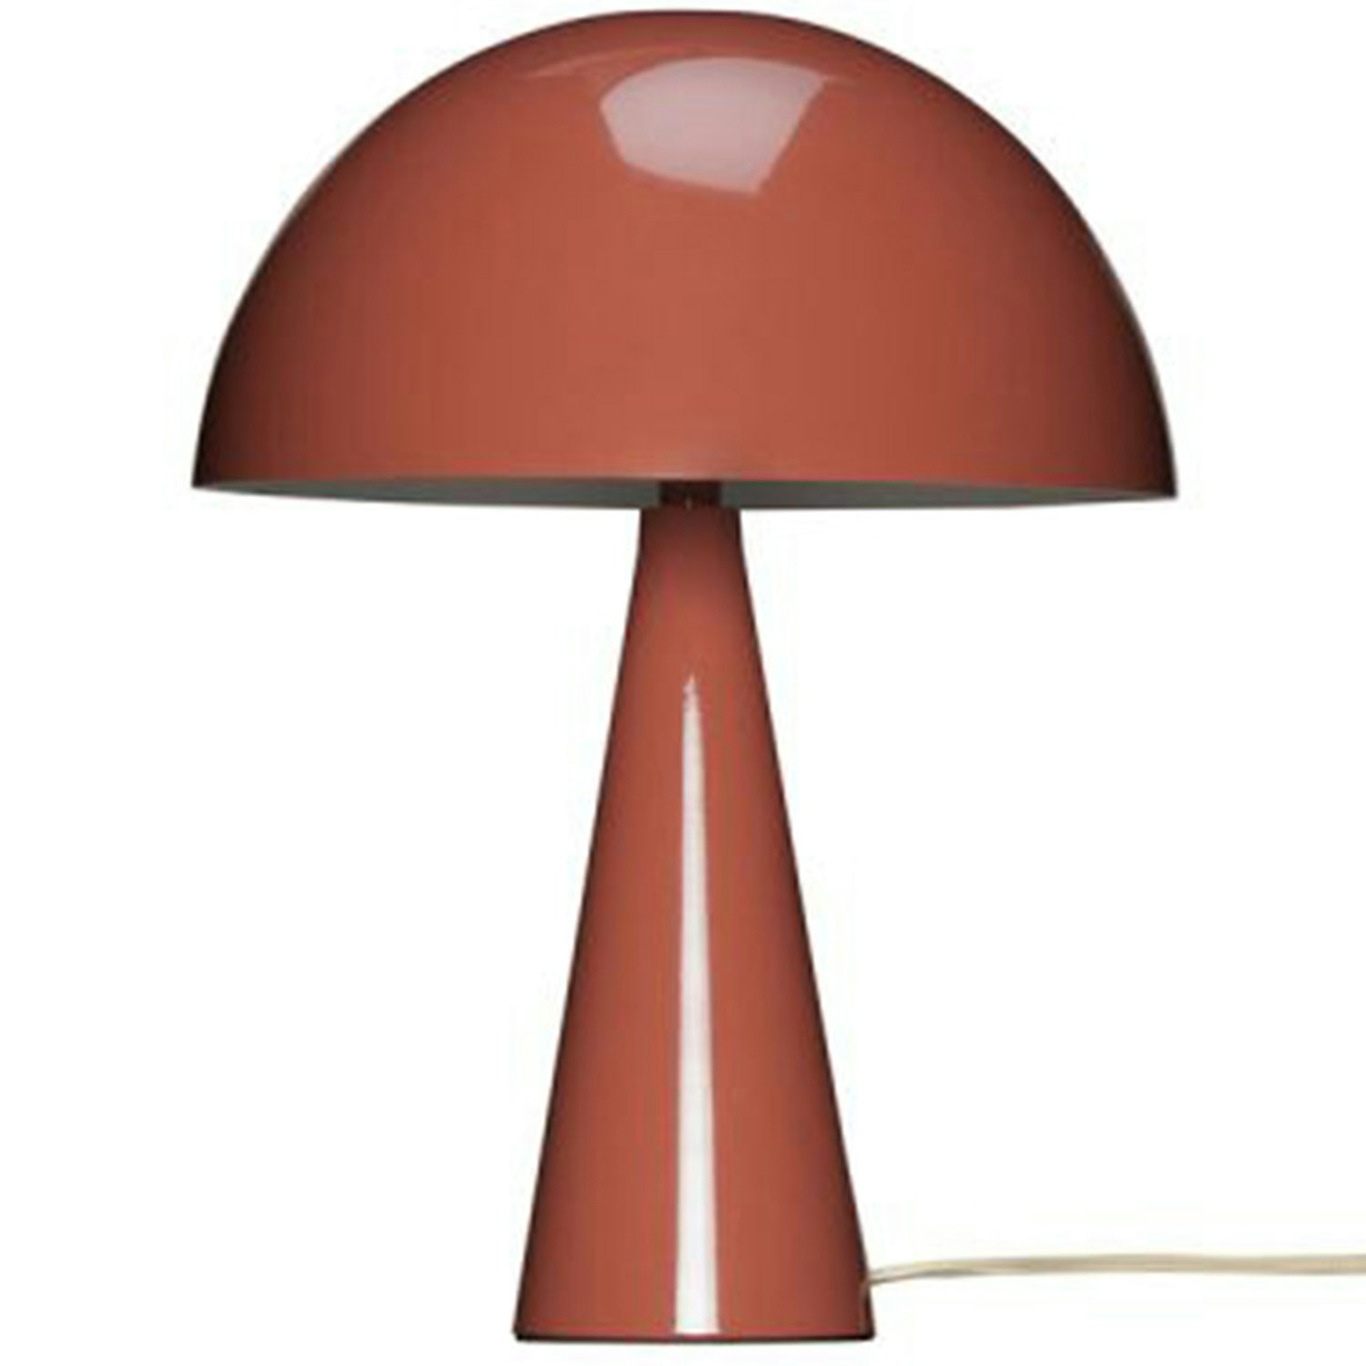 Mush Mini Table Lamp, Maroon/Sand